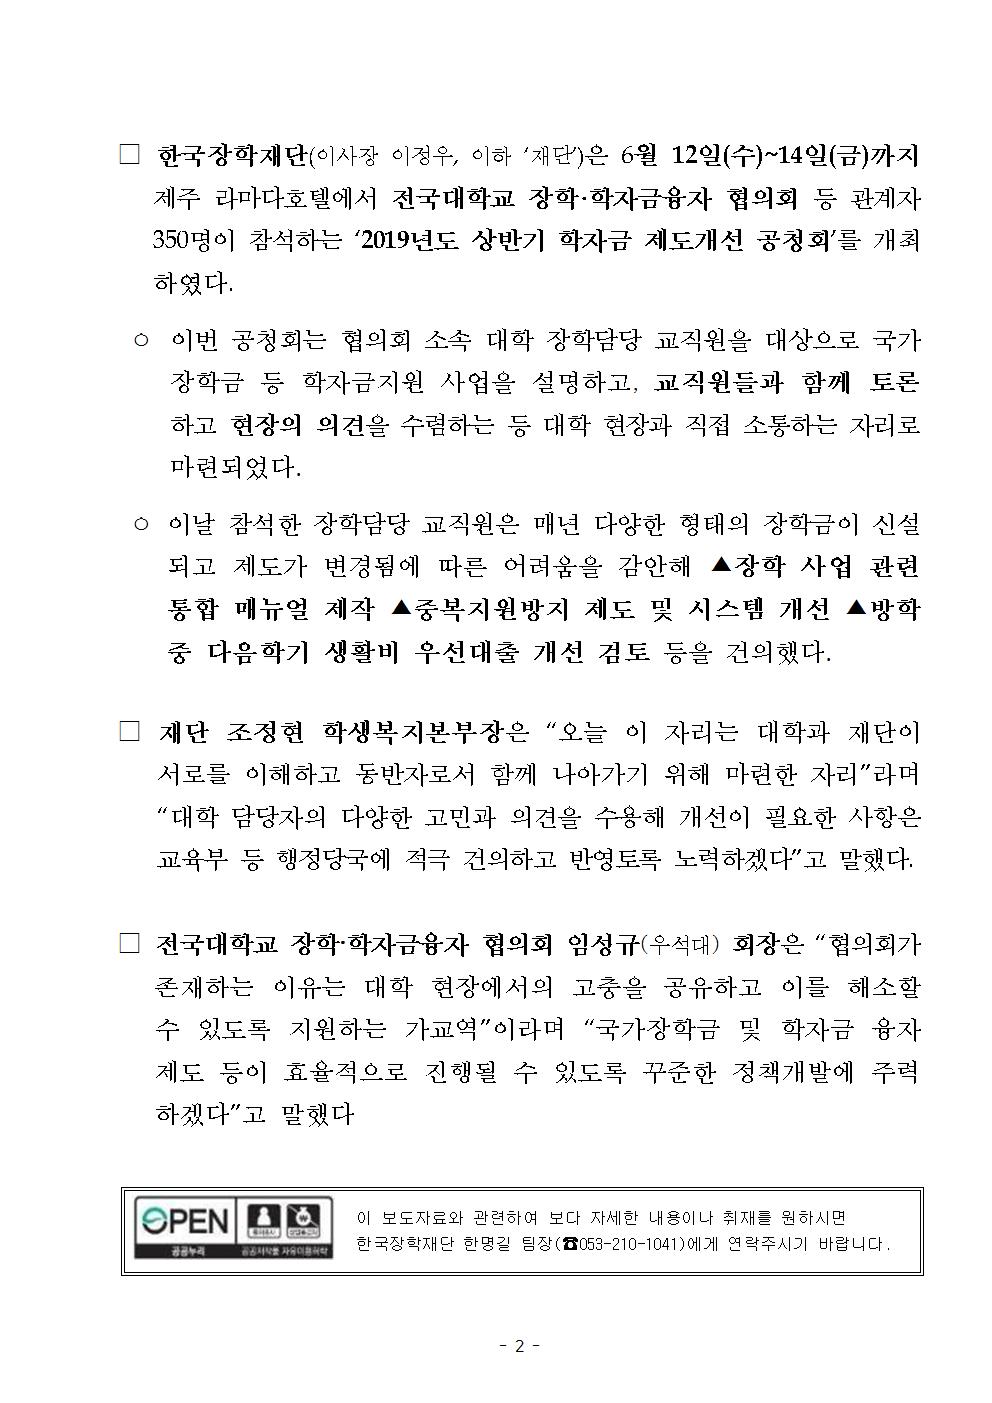 06-17(월)[보도자료] 한국장학재단 학자금 제도개선 공청회 개최002.jpg